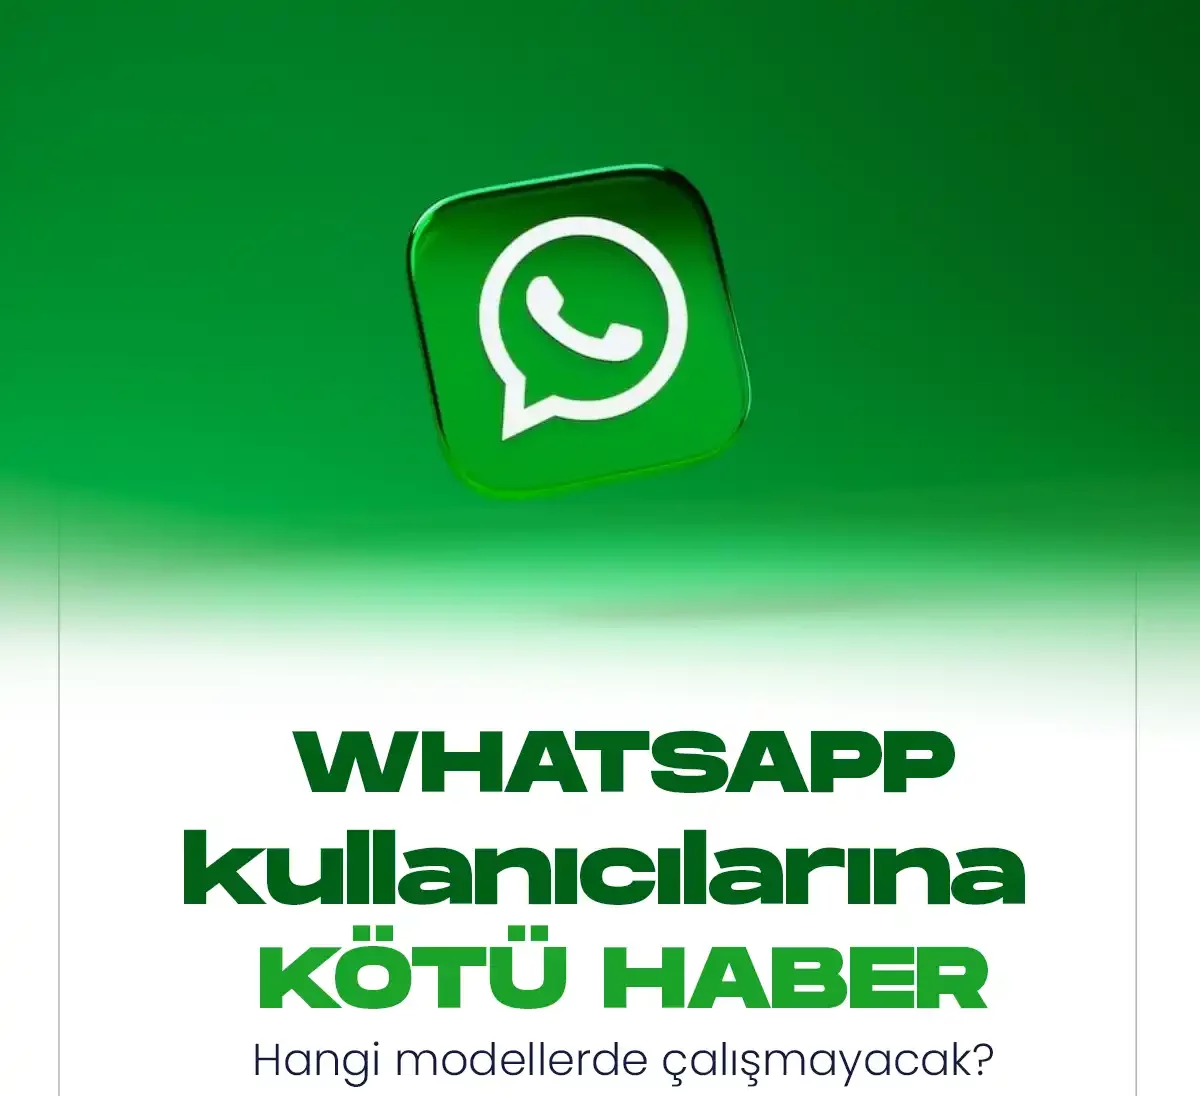 Whatsapp kullanıcılarına kötü haber...